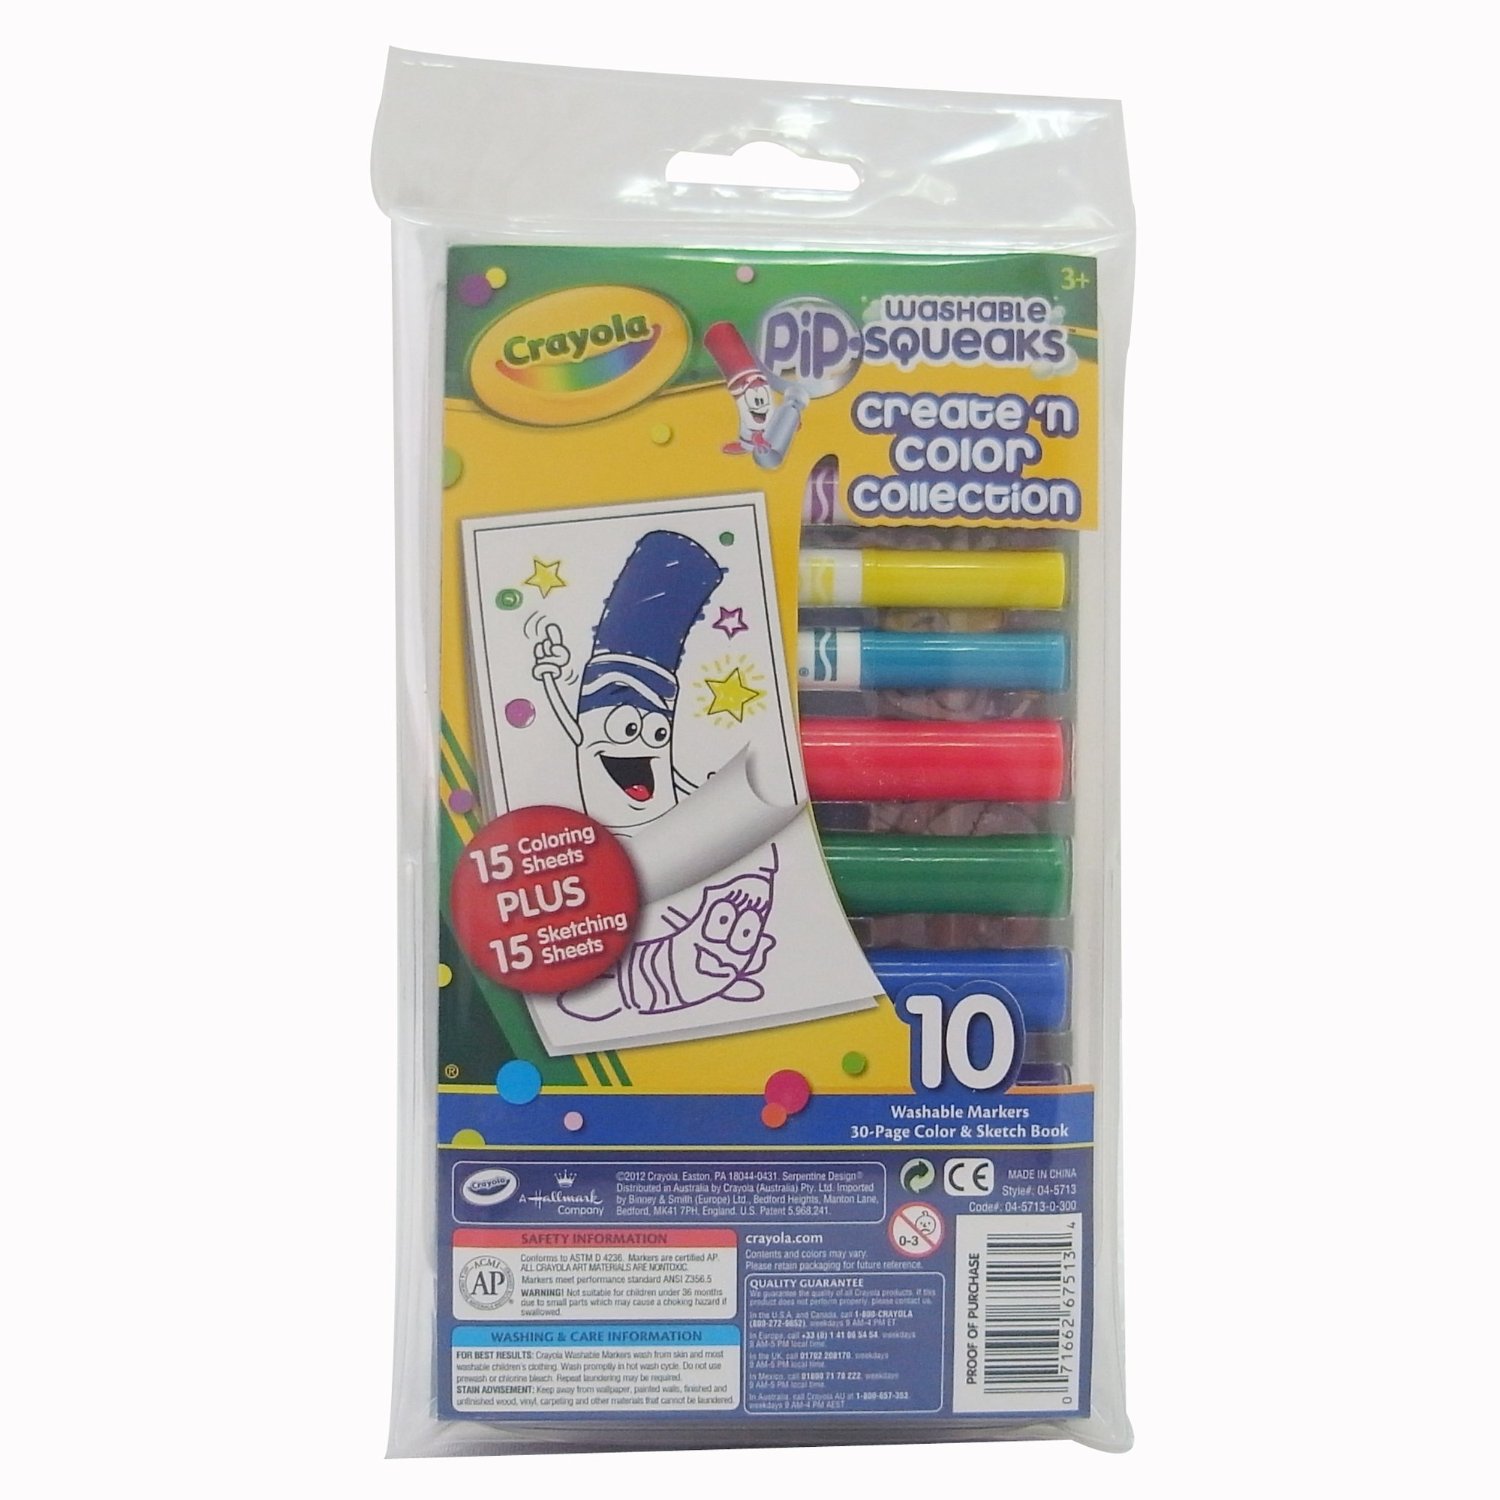 Crayola Emoji Marker Maker - Shop Kits at H-E-B